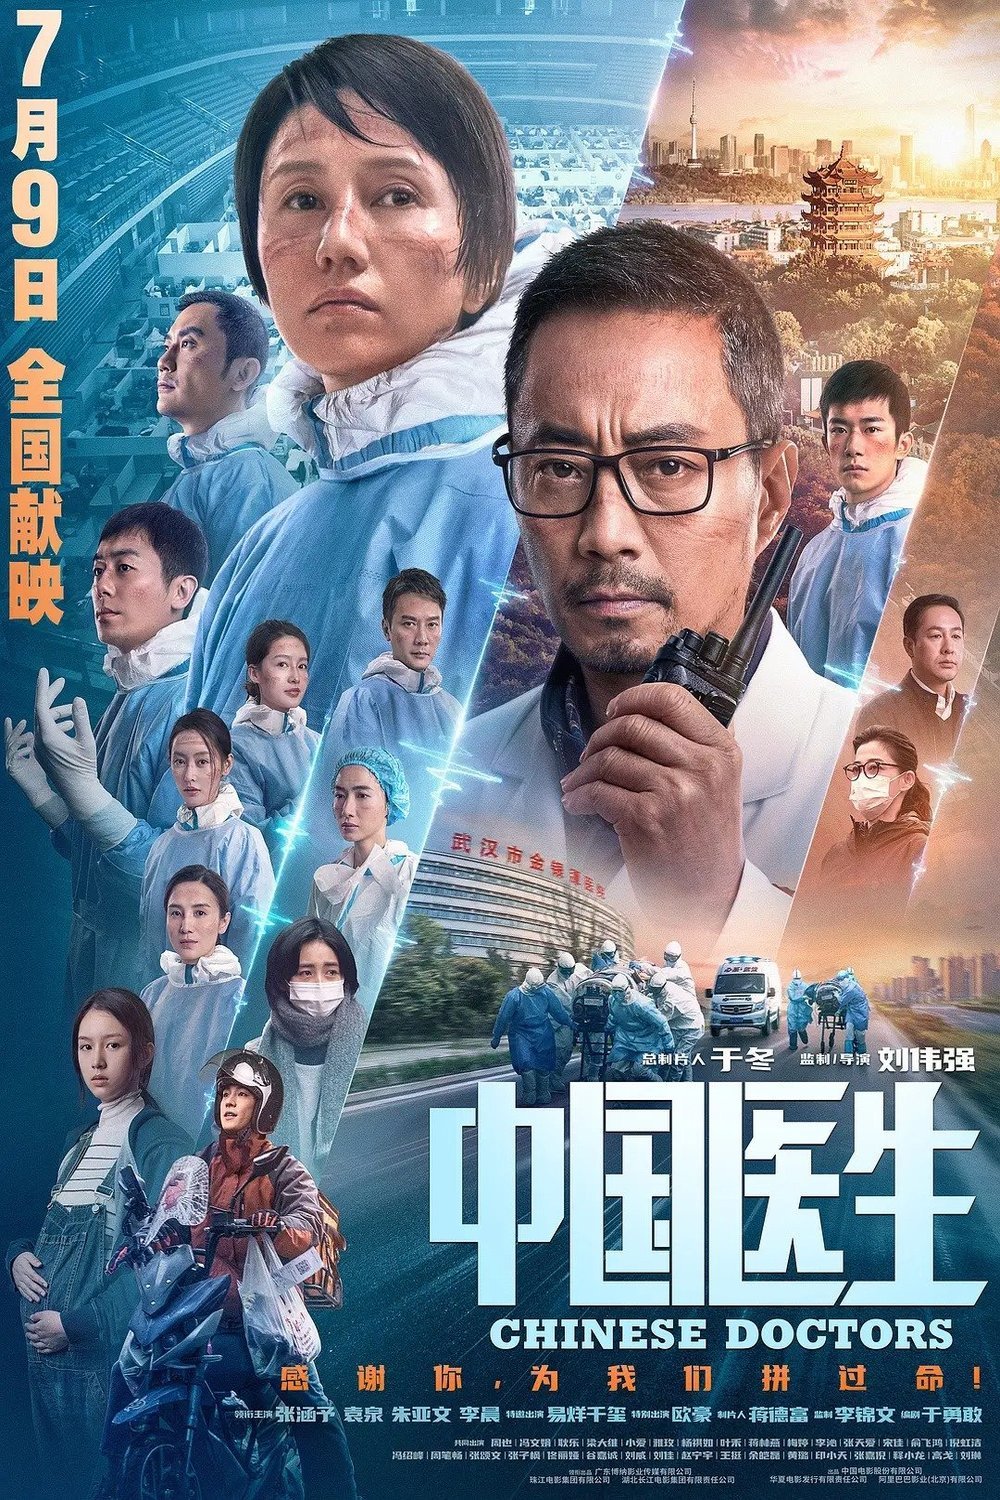 Chinese poster of the movie Zhong guo yi sheng